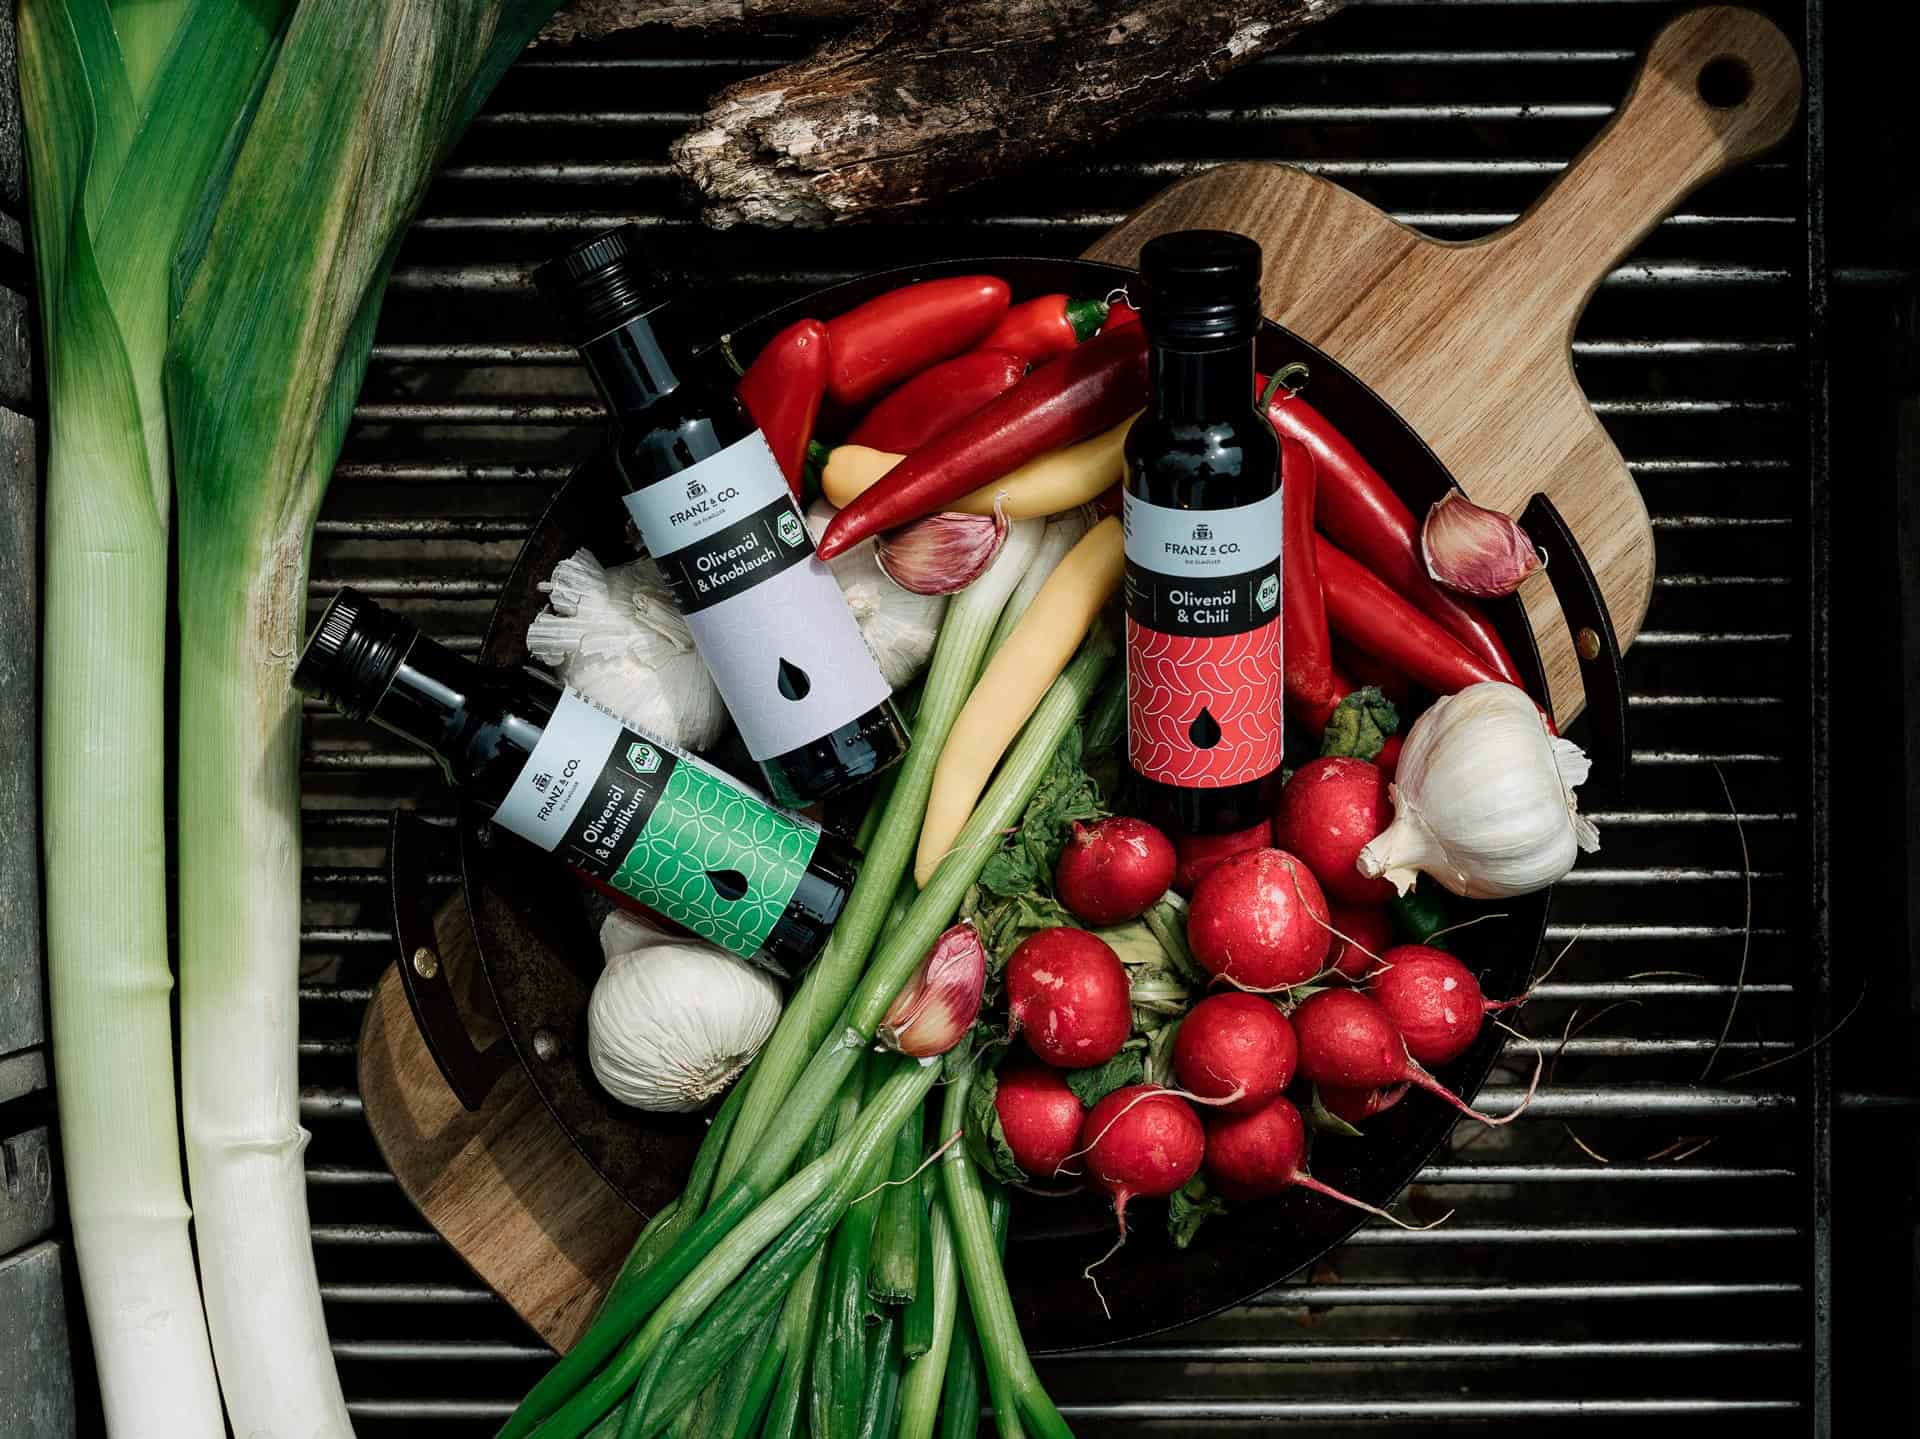 Olivenöl mit Chili, Knoblauch oder Basilikum von FRANZ & CO. liegen in einer Schale mit frischem Gemüse bereit.